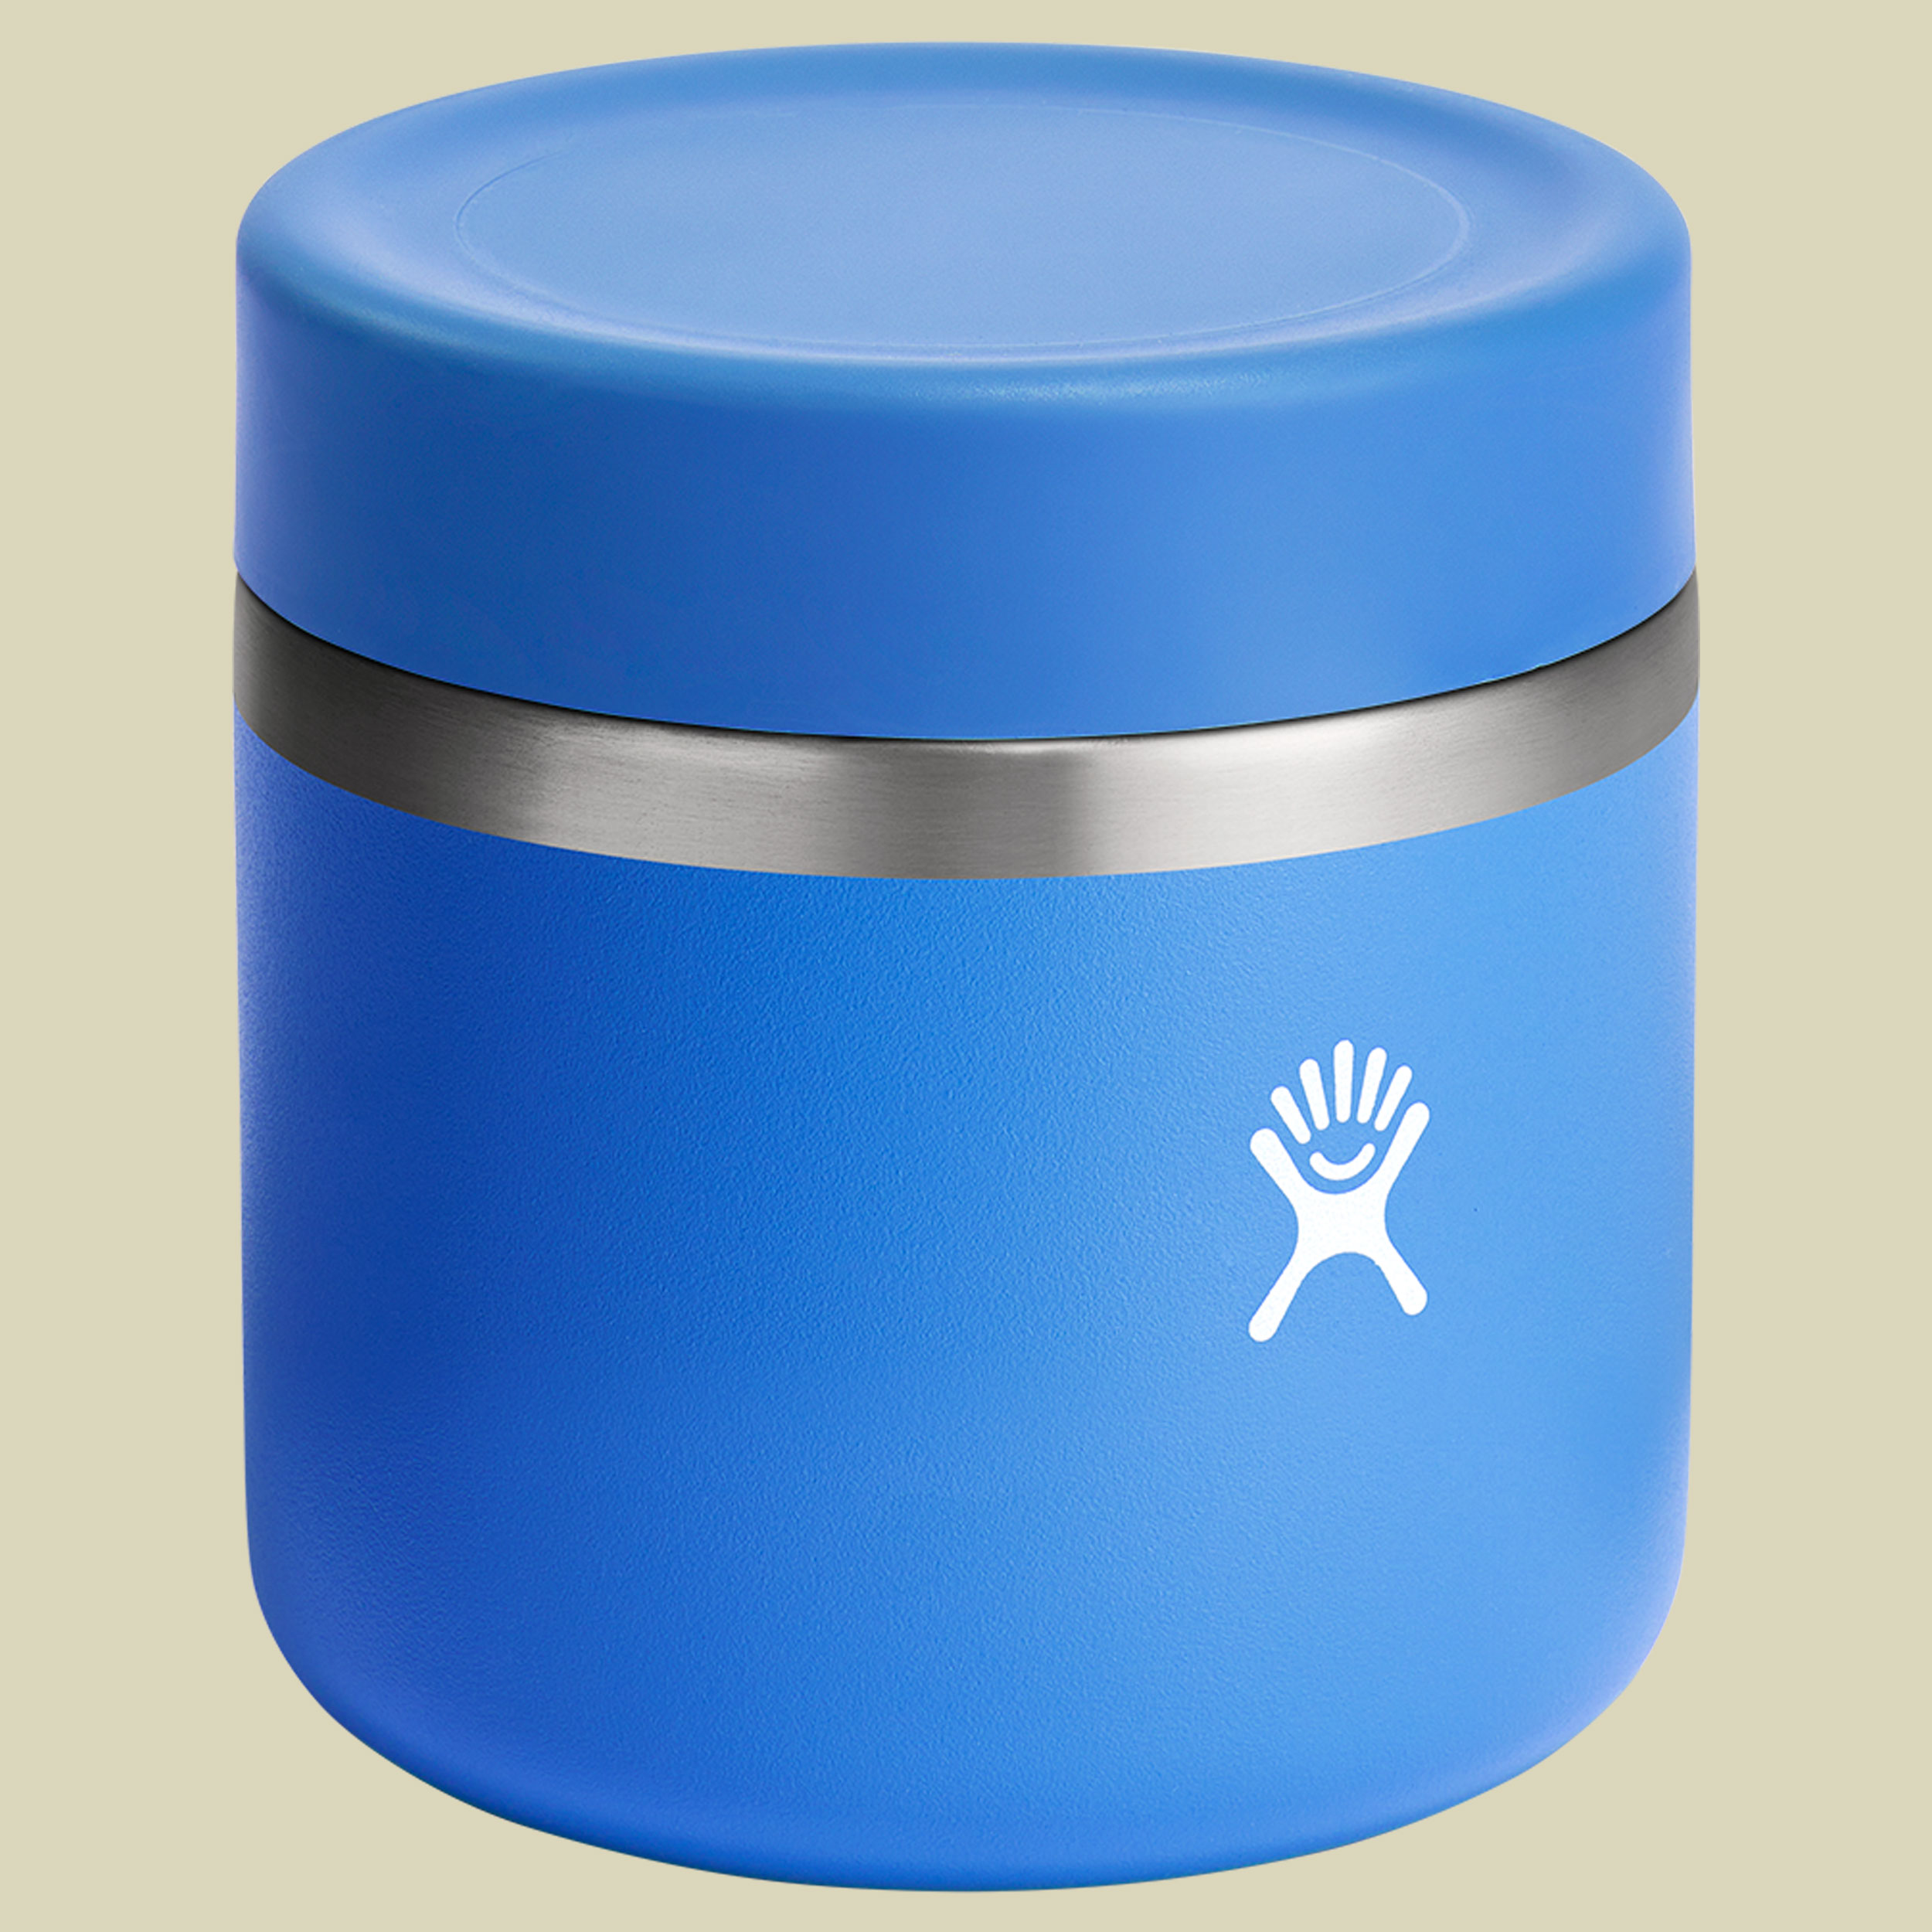 Hydro Flask 20 oz Insulated Food Jar blau 591 - Farbe cascade